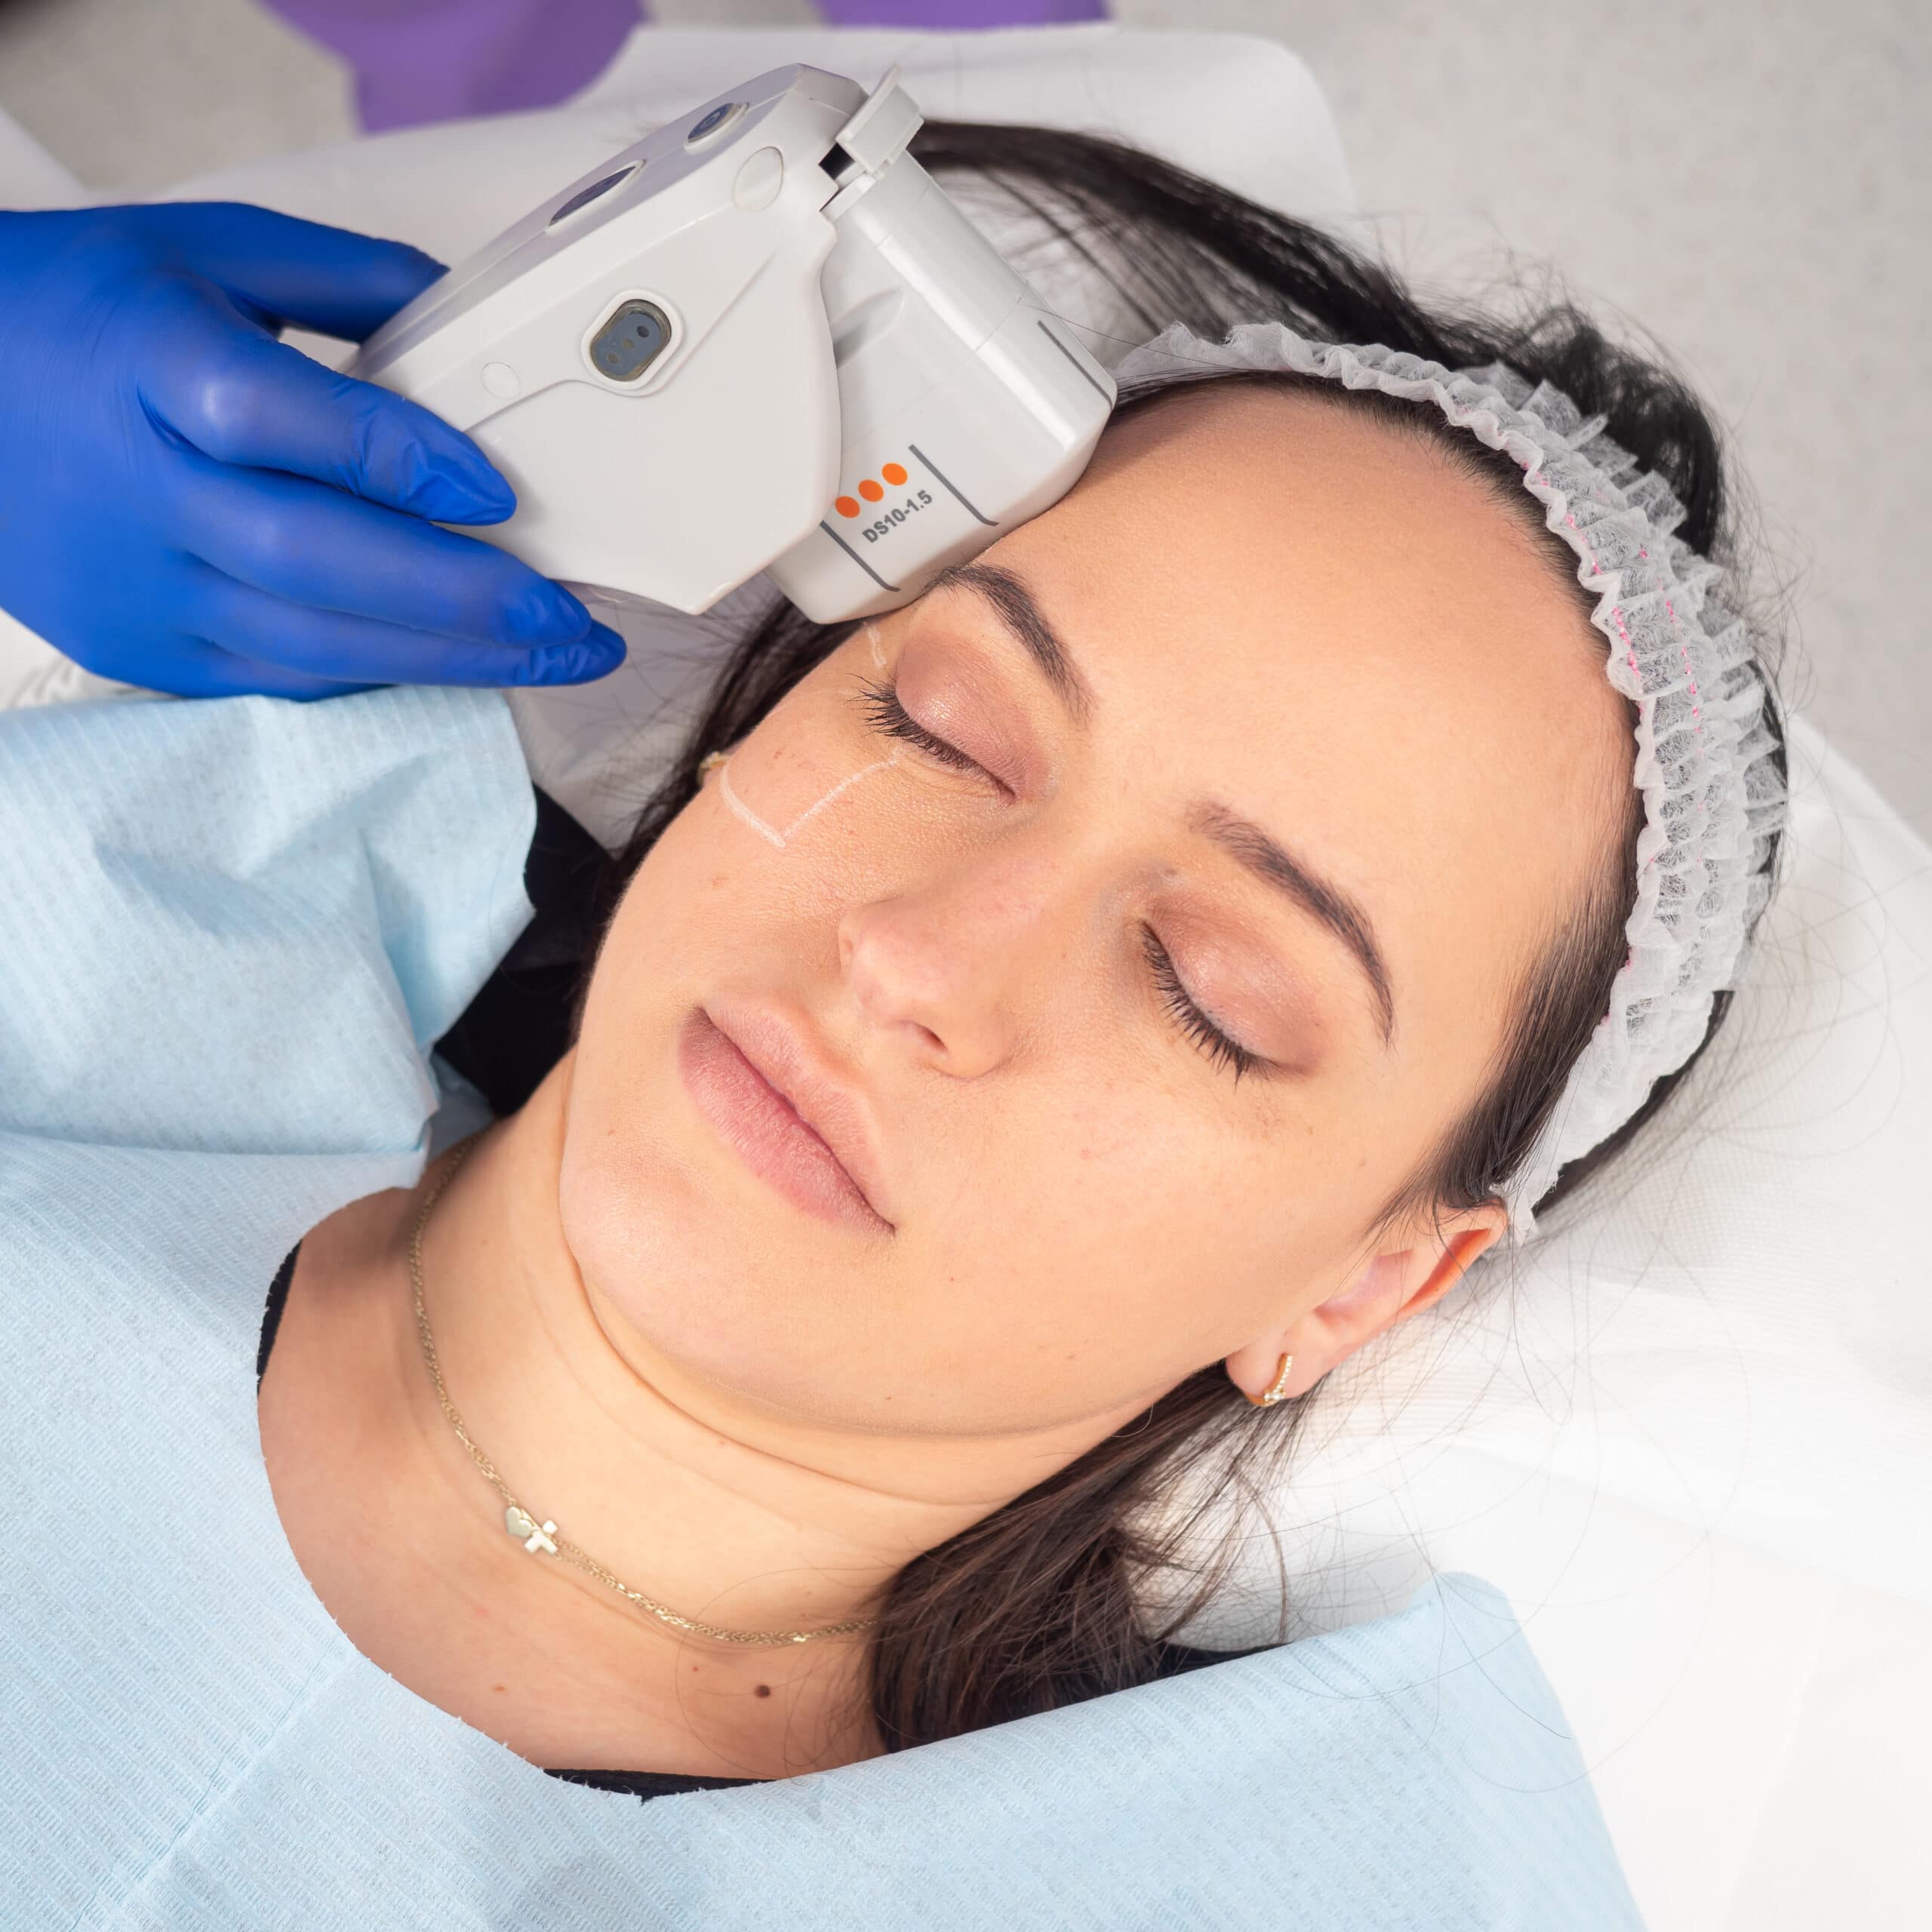 Liftingul facial fara operatie este cea mai noua metoda de intinerire - Clinica Dr. Negoita